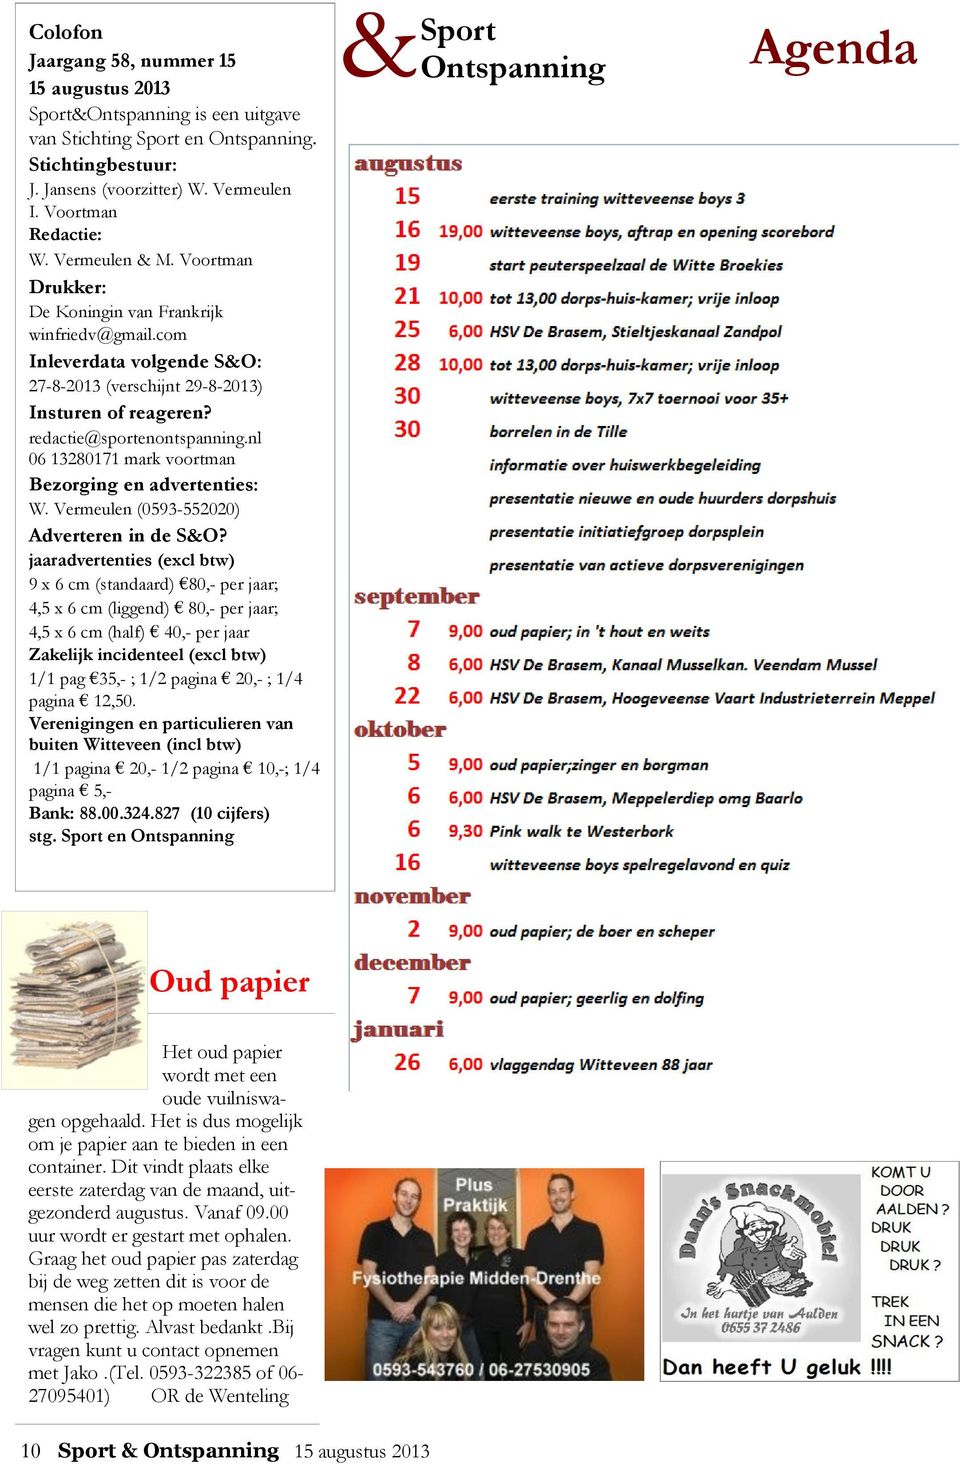 nl 06 13280171 mark voortman Bezorging en advertenties: W. Vermeulen (0593-552020) Adverteren in de S&O?